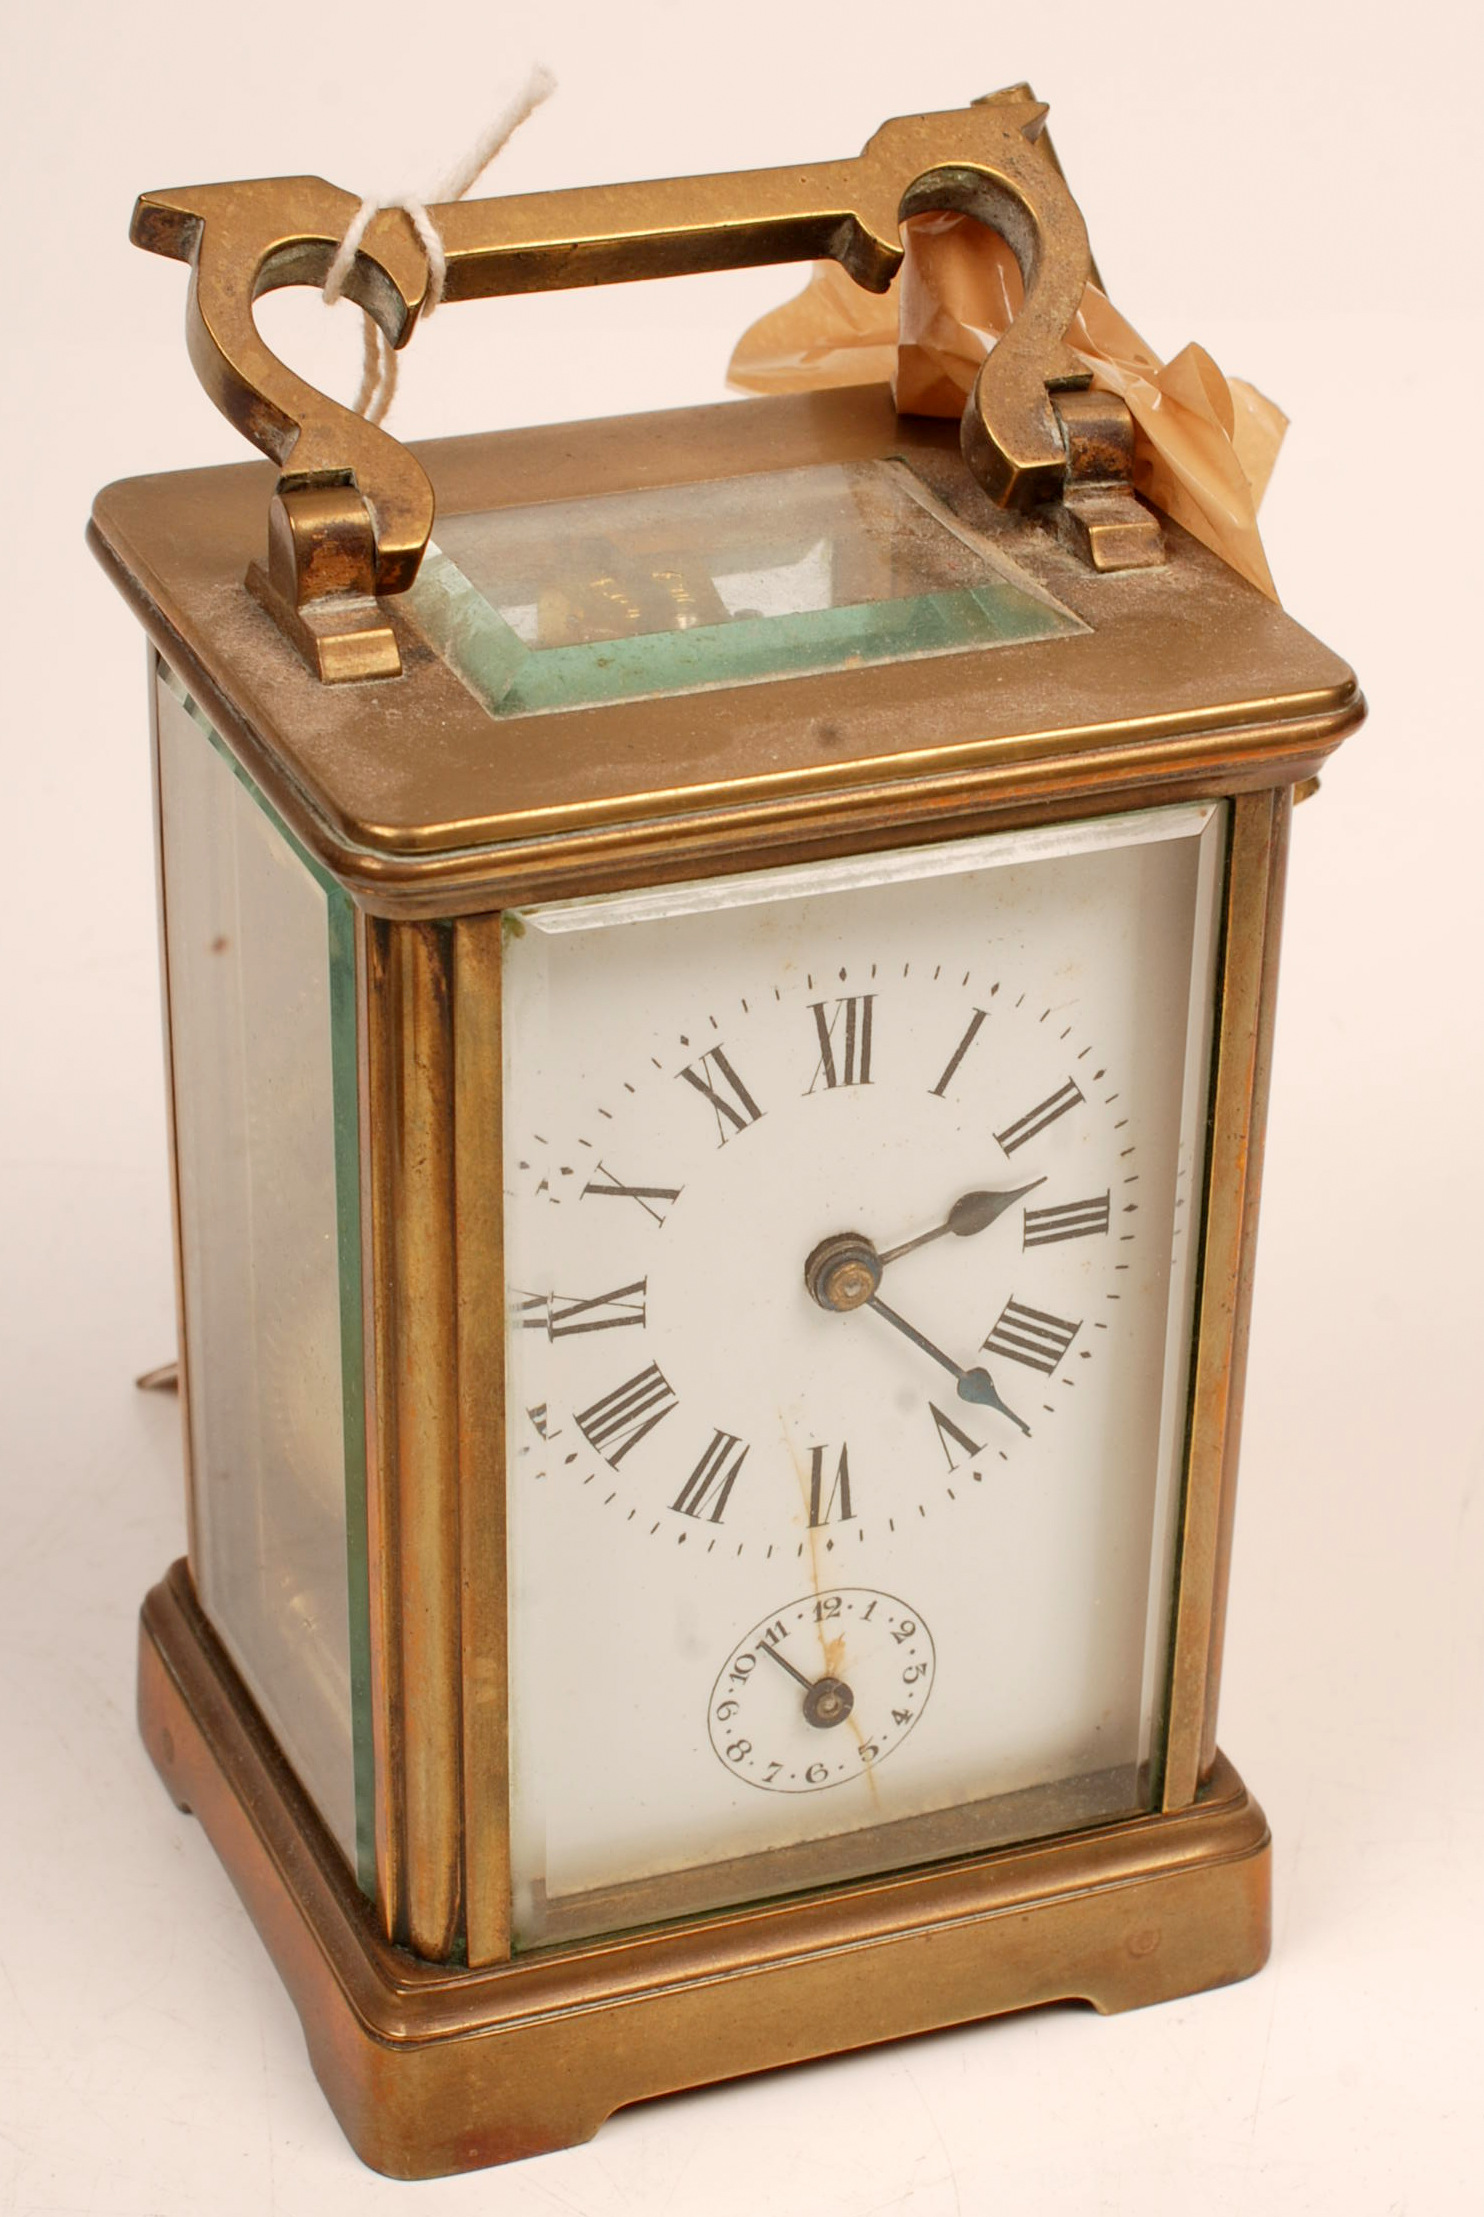 An alarm carriage clock in brass corniche case.